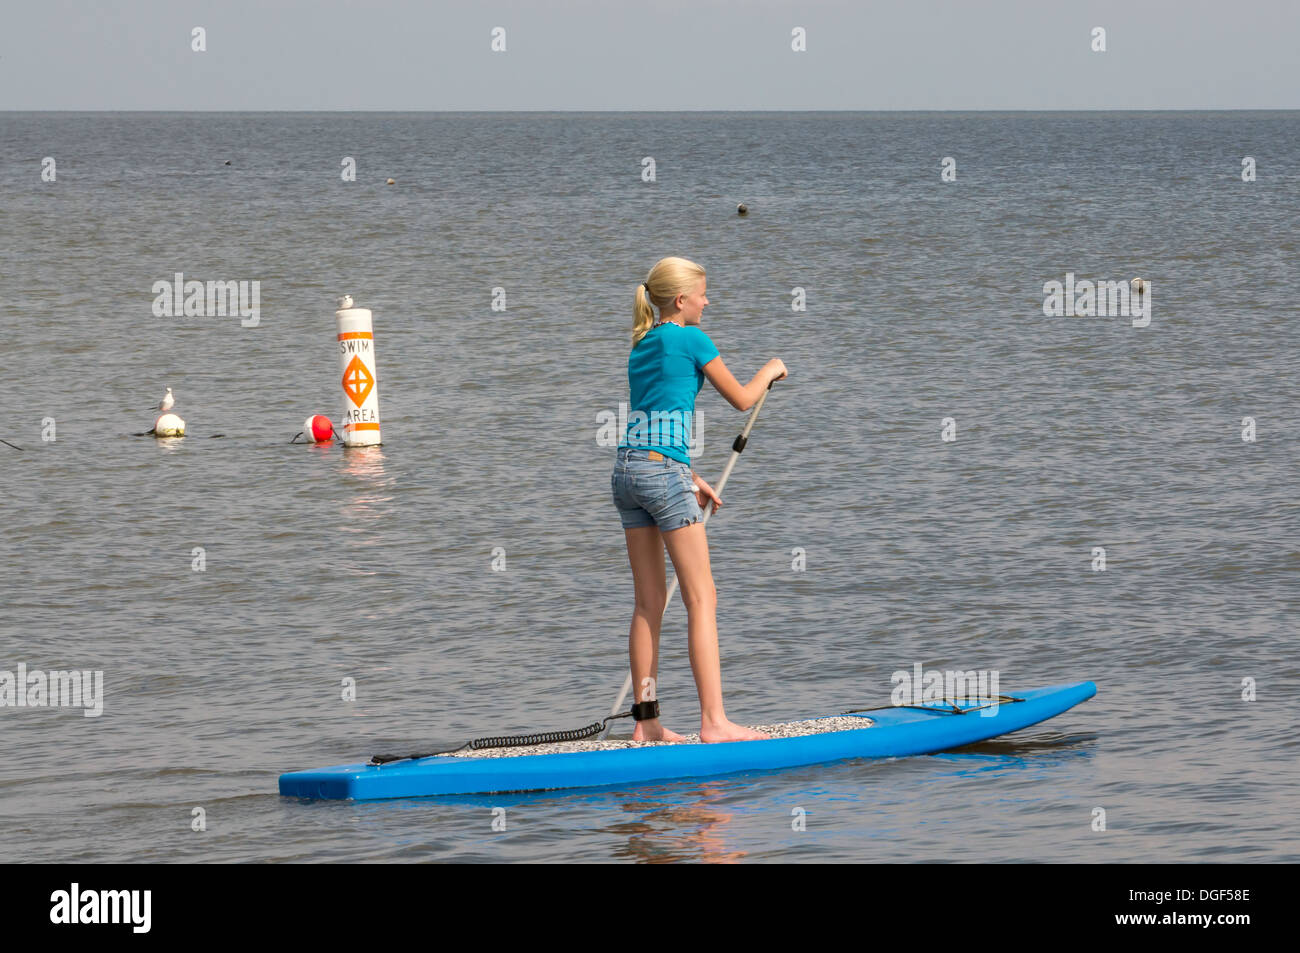 Giovane ragazza adolescente blu che indossa pantaloni corti e t-shirt sul SUP stand up paddleboard su acque calme appena fuori da una spiaggia di sabbia bianca. Foto Stock